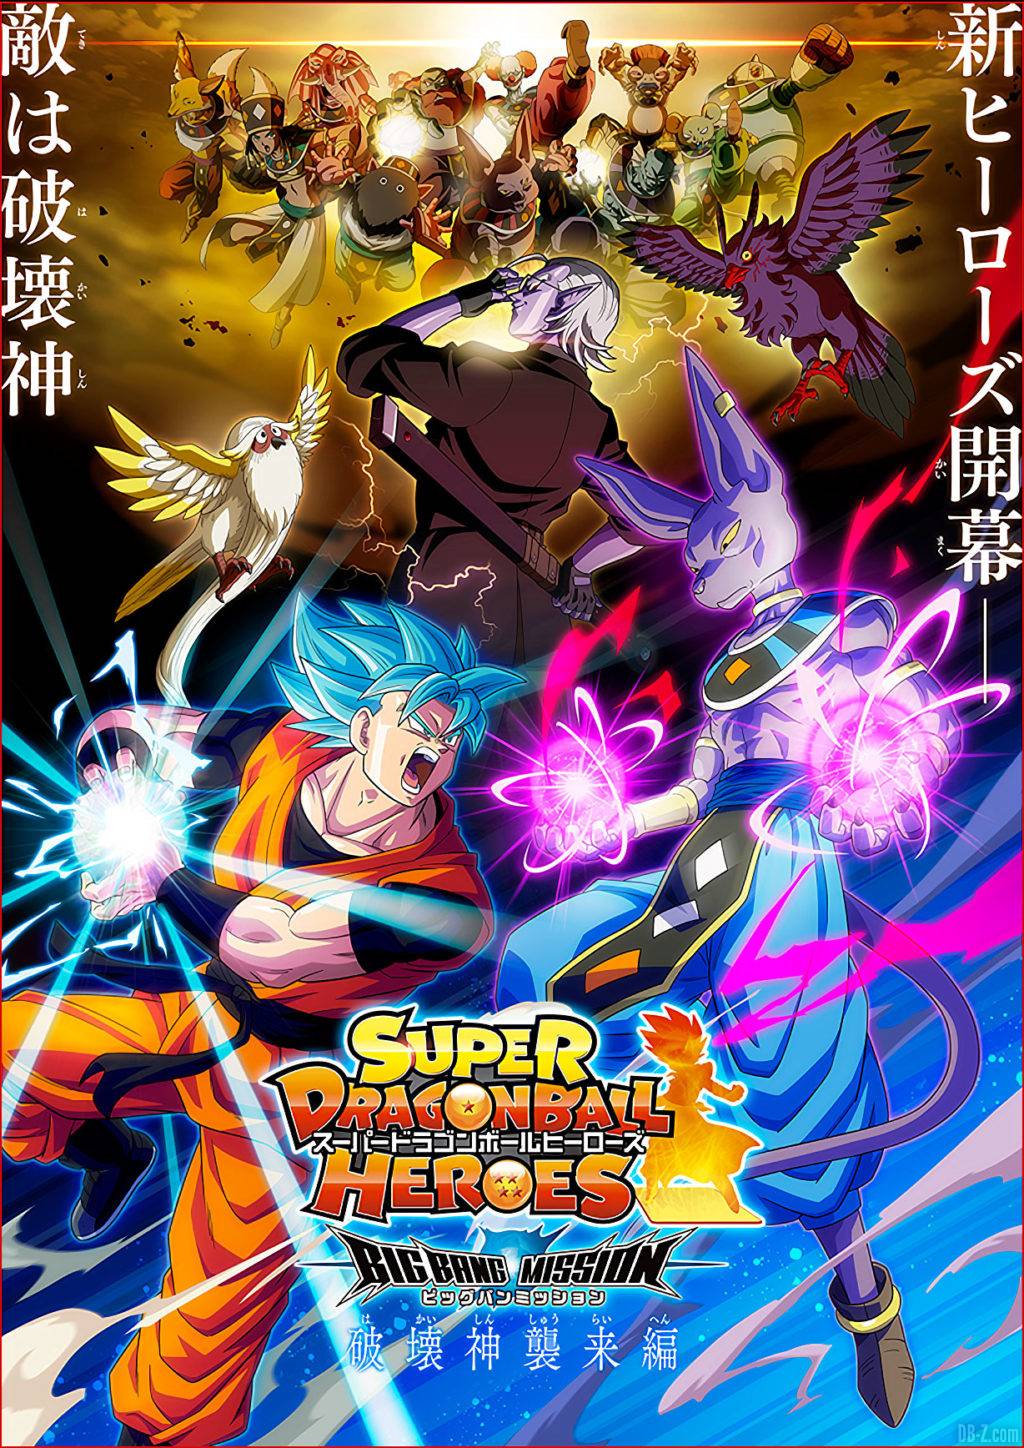 Super Dragon Ball Heroes Episode 21 - Résumé et Date de sortie du nouvel arc